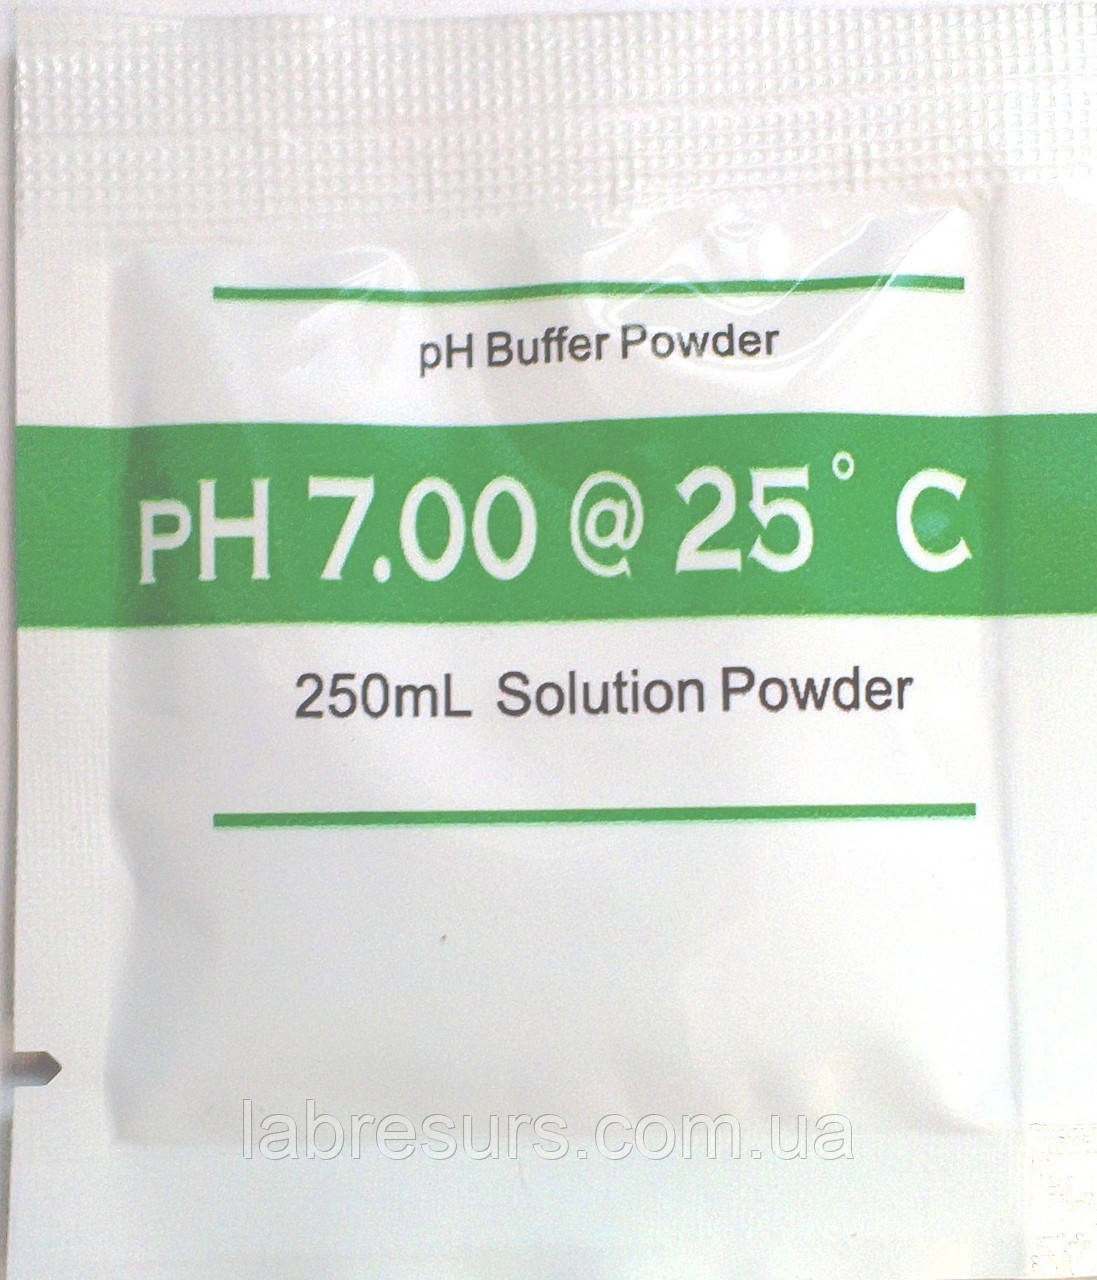 Калібрувальний розчин для ph метра — pH 7.00 ( стандарт-титр) Порошок на 250 мл.